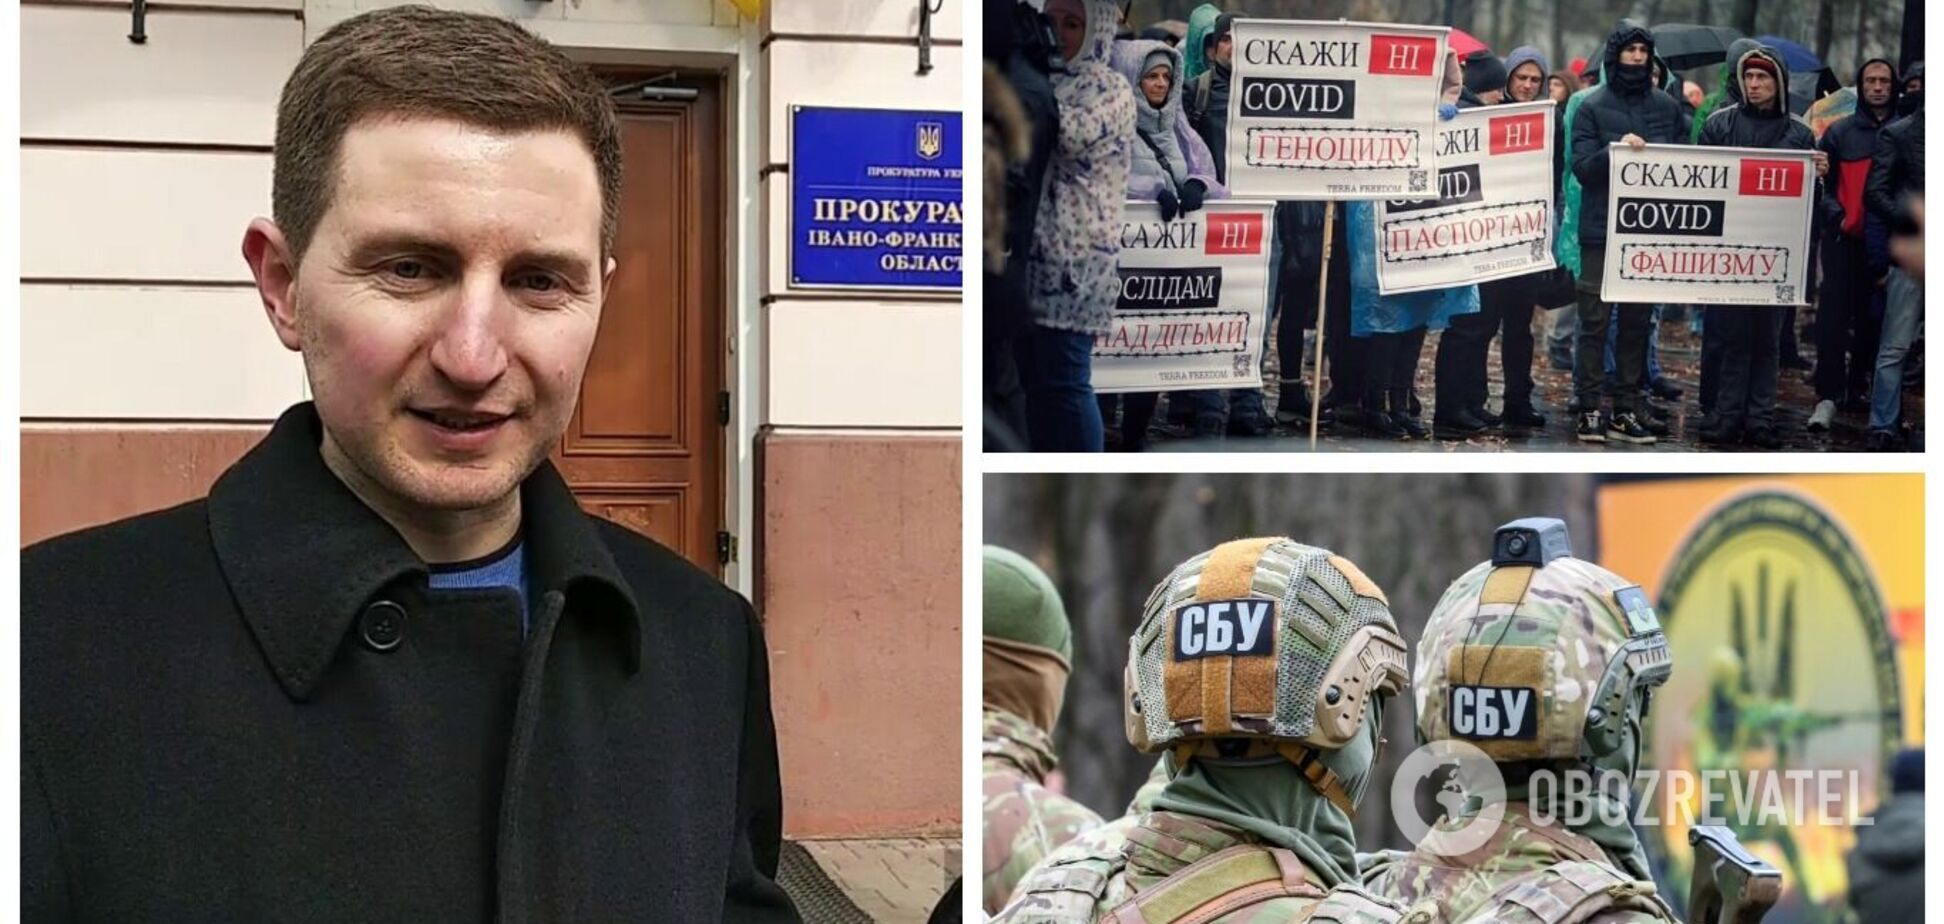 СБУ сообщила о подозрении лидеру 'антивакцинаторов' в Украине: накануне прошли обыски. Фото